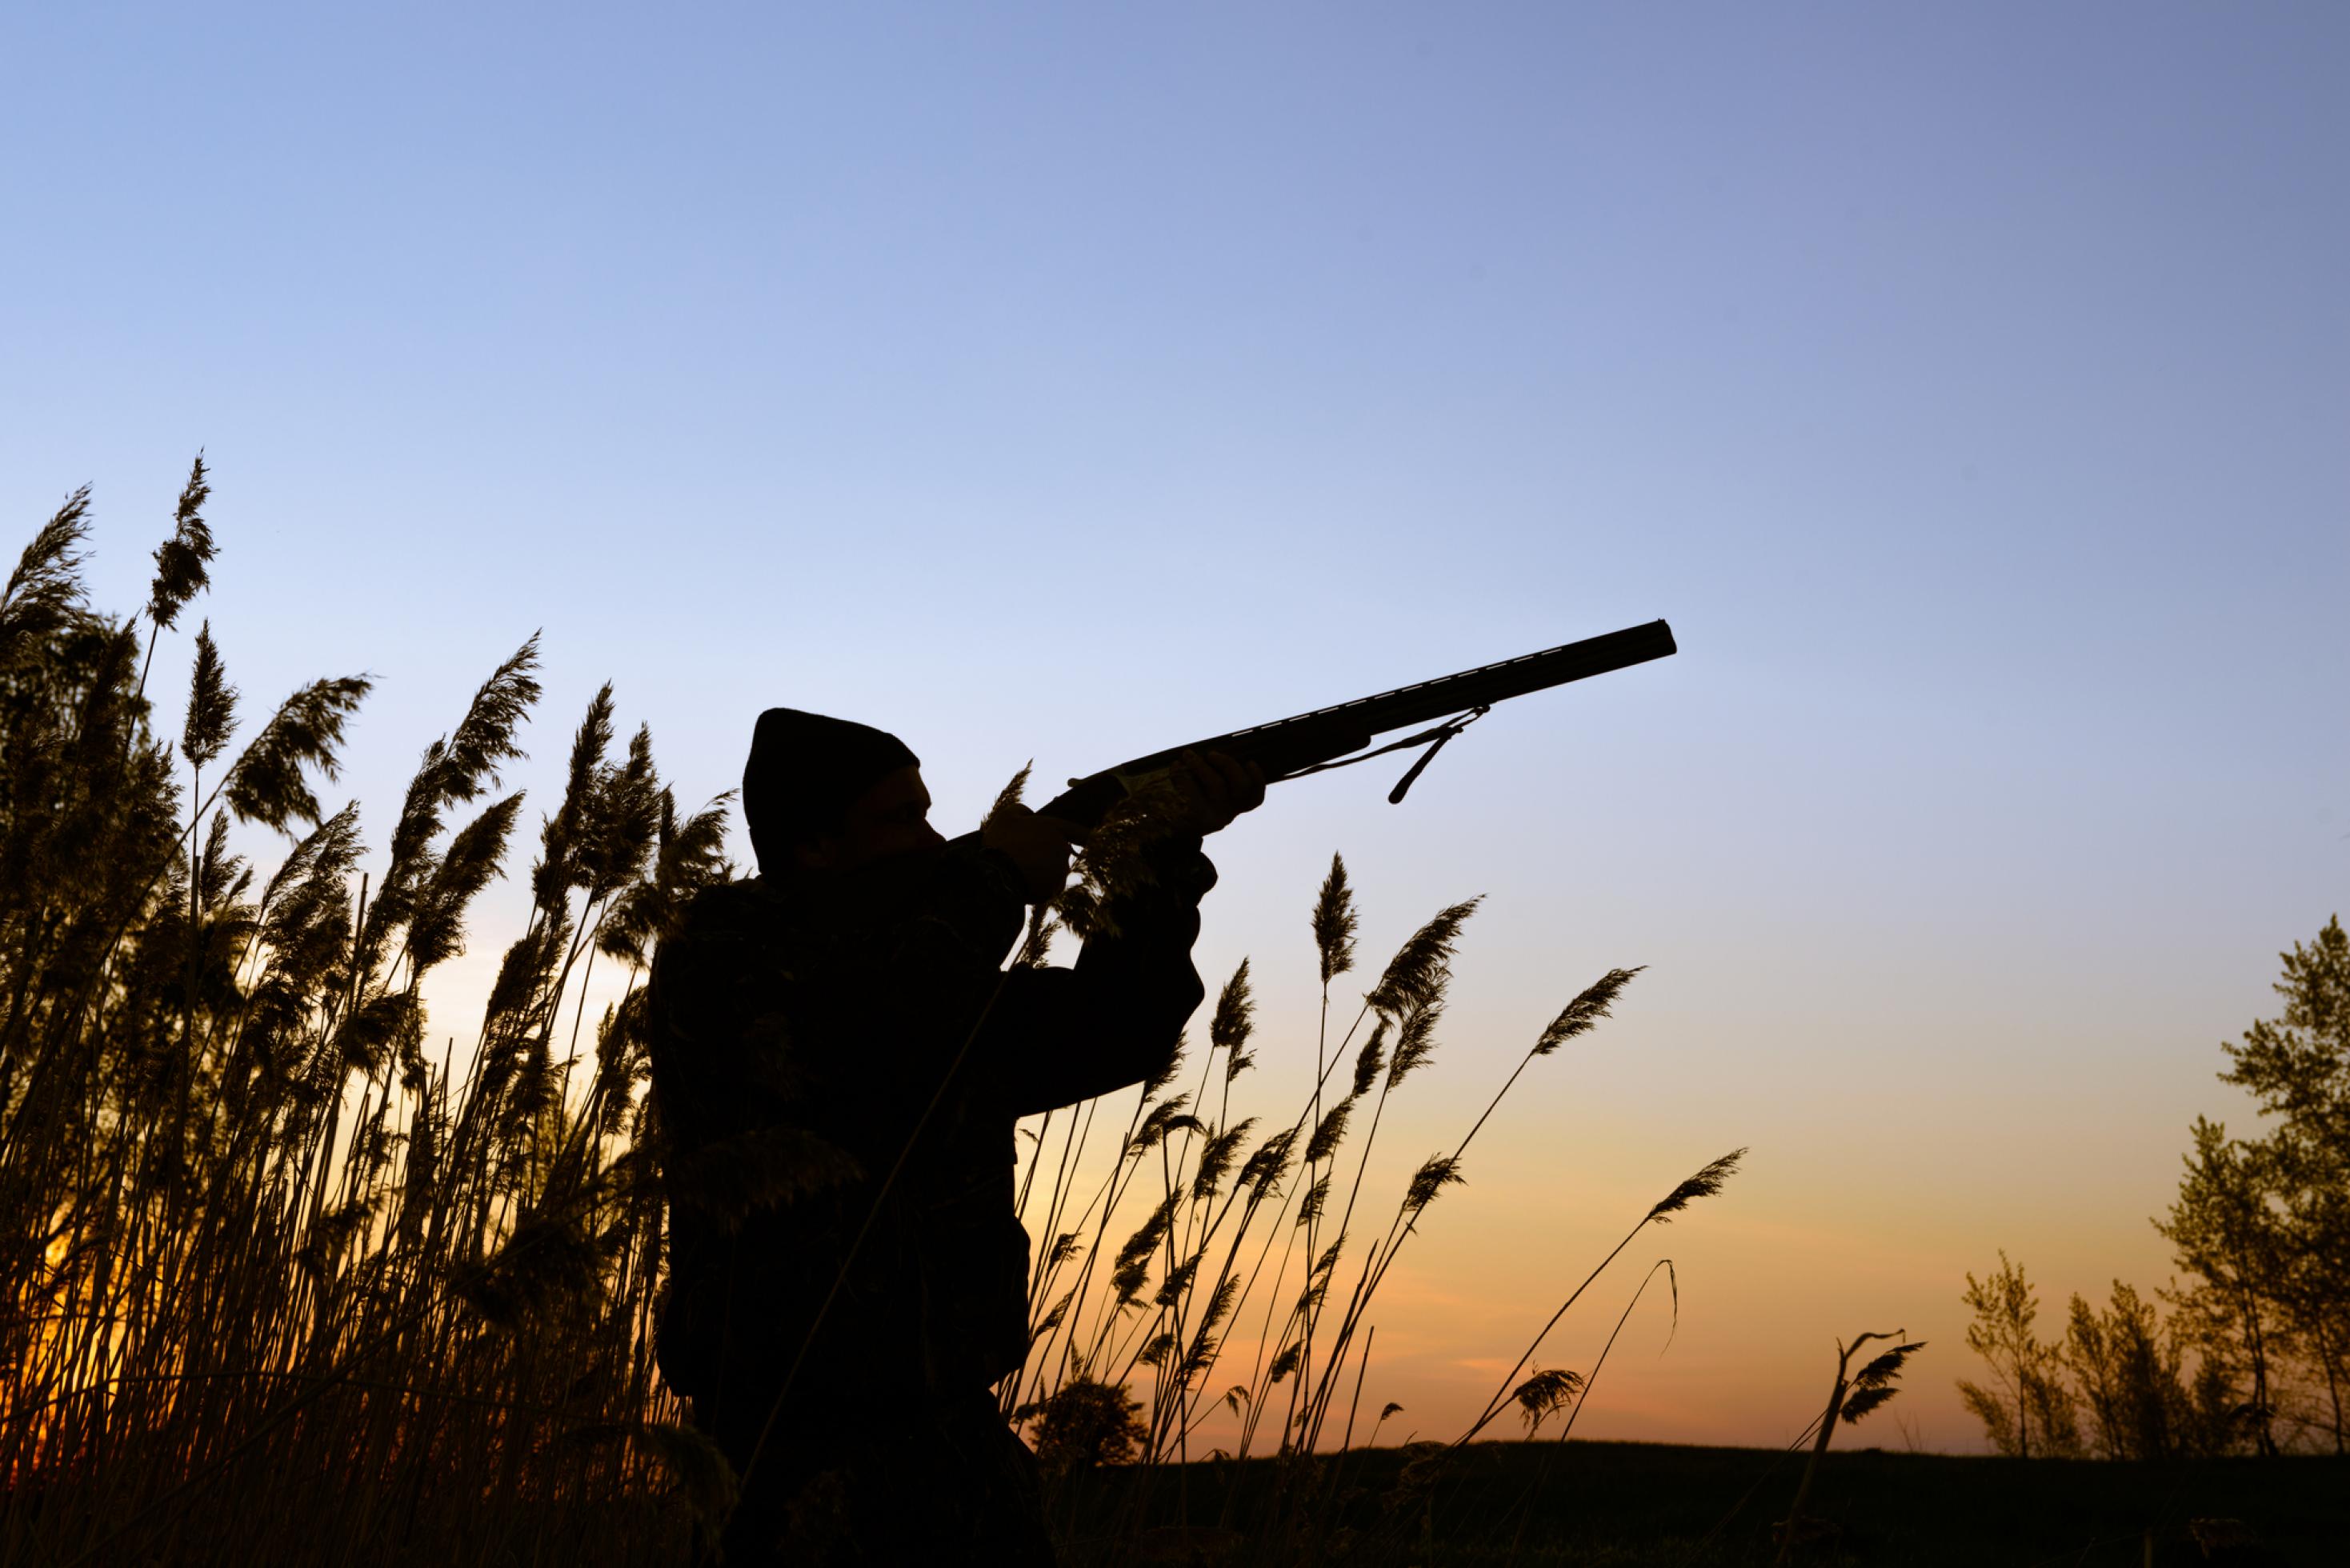 Das Bild zeigt einen Jäger im Schilf im Abendlicht, der mit einem Schrotgewehr in Richtung Himmel zielt.